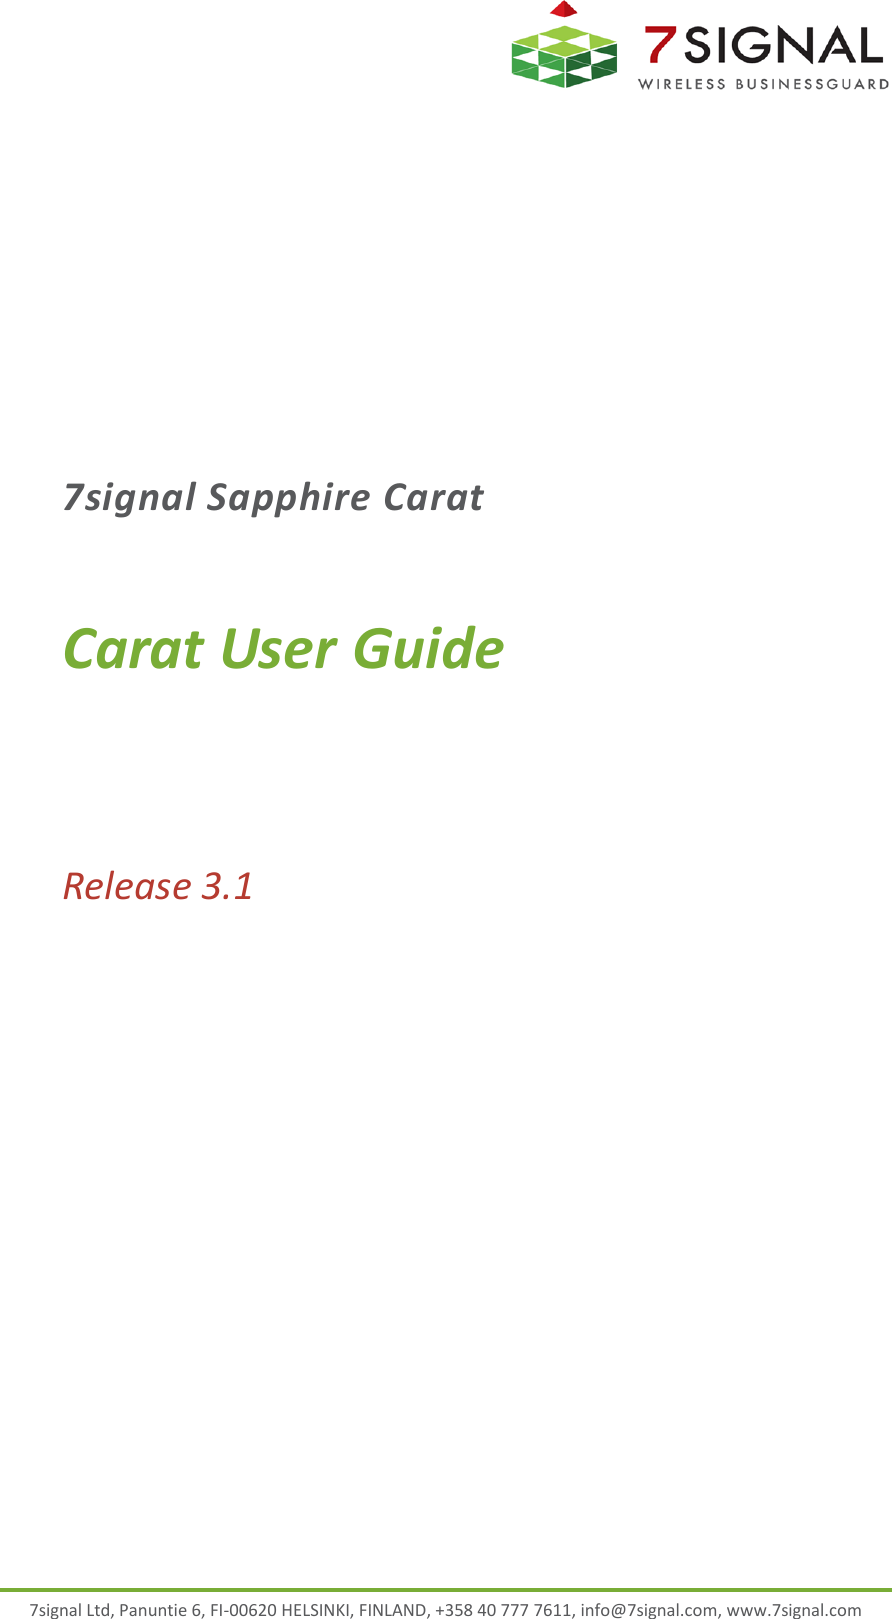  7signal Ltd, Panuntie 6, FI-00620 HELSINKI, FINLAND, +358 40 777 7611, info@7signal.com, www.7signal.com 7signal Sapphire Carat Carat User Guide Release 3.1  